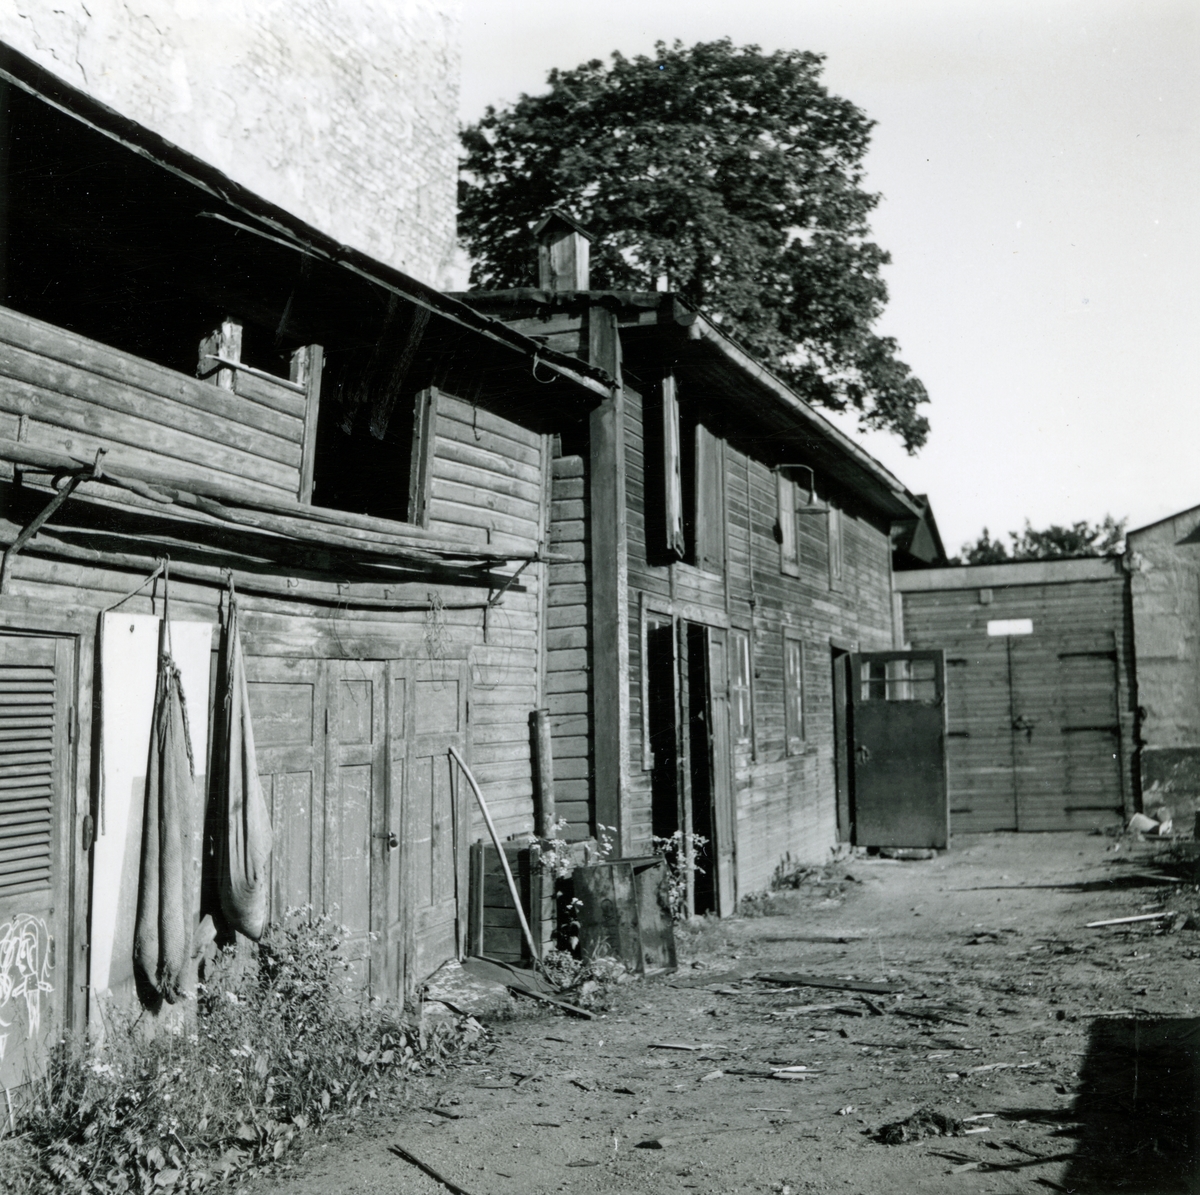 Motiv från Packhusgatan 1 i Norrköping. Fotodokumentation av bostadshus med tillhörande uthus taget i samband med ansökan om rivningstillstånd.